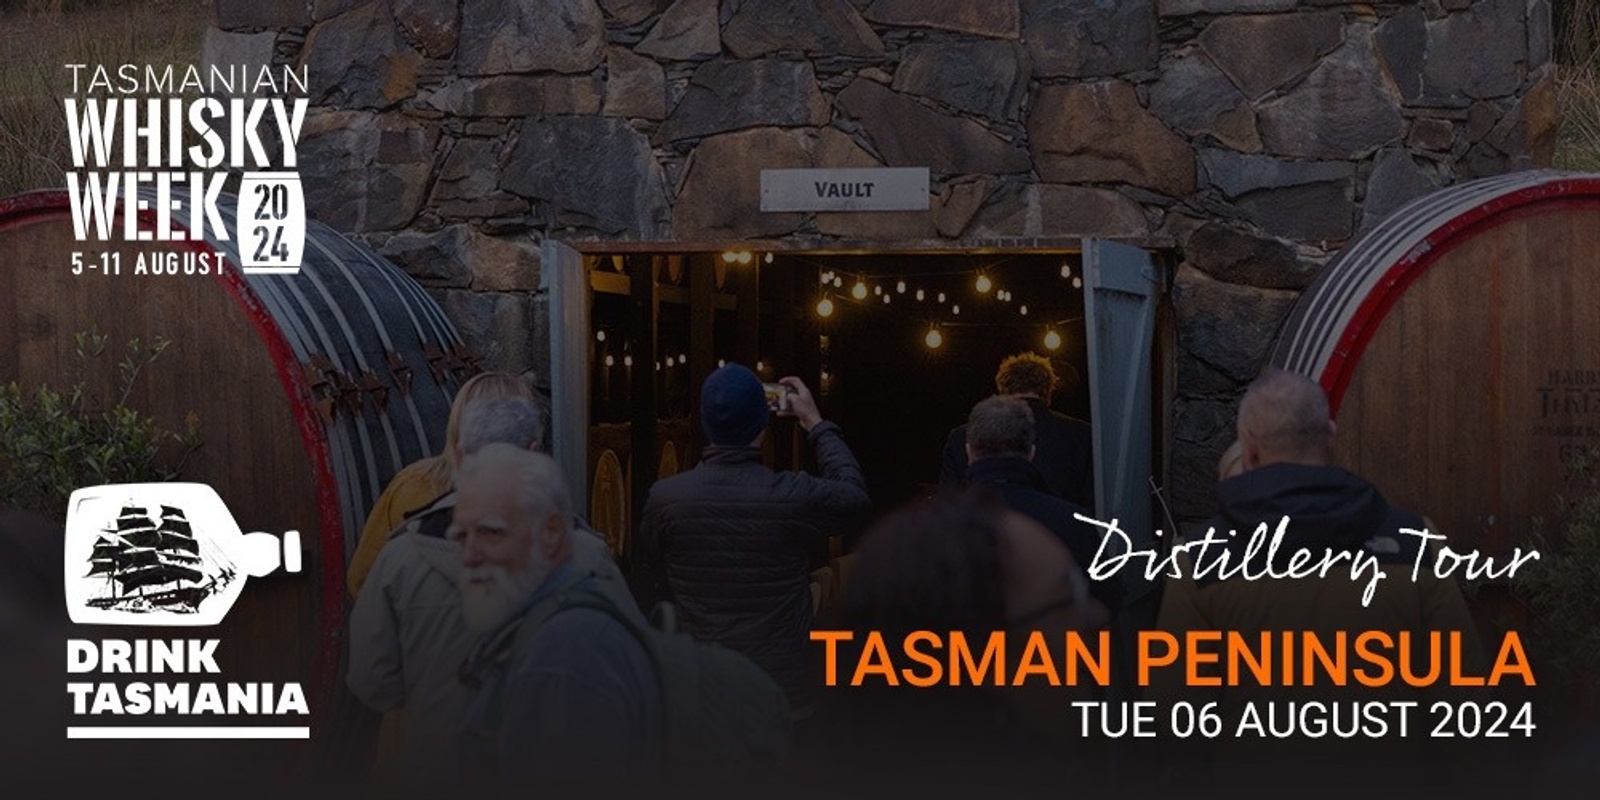 Banner image for Tas Whisky Week - Distillery Tour Tasman Peninsula 